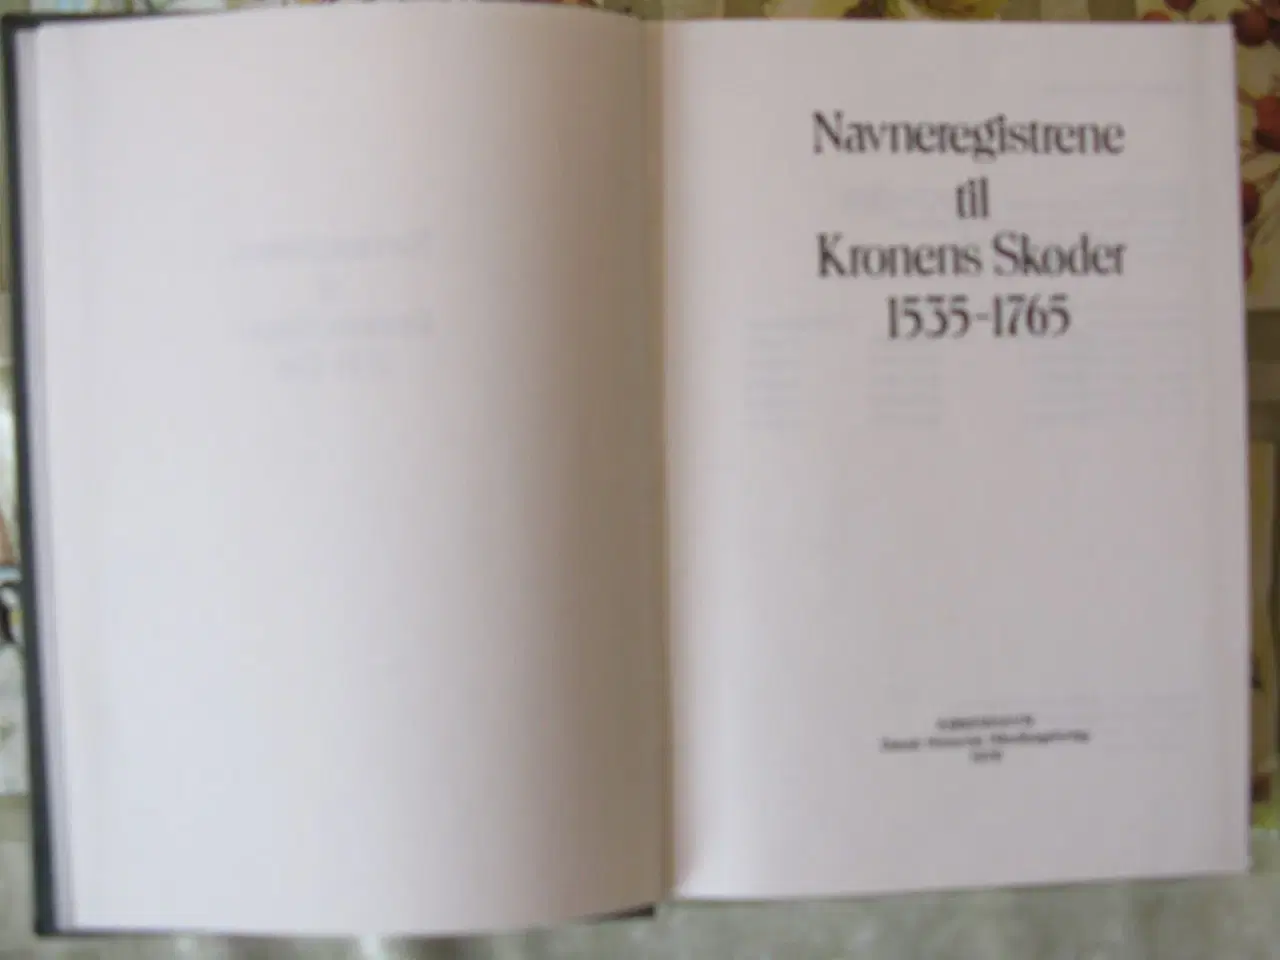 Billede 1 - Navneregister til Kronens skøder 1535-17